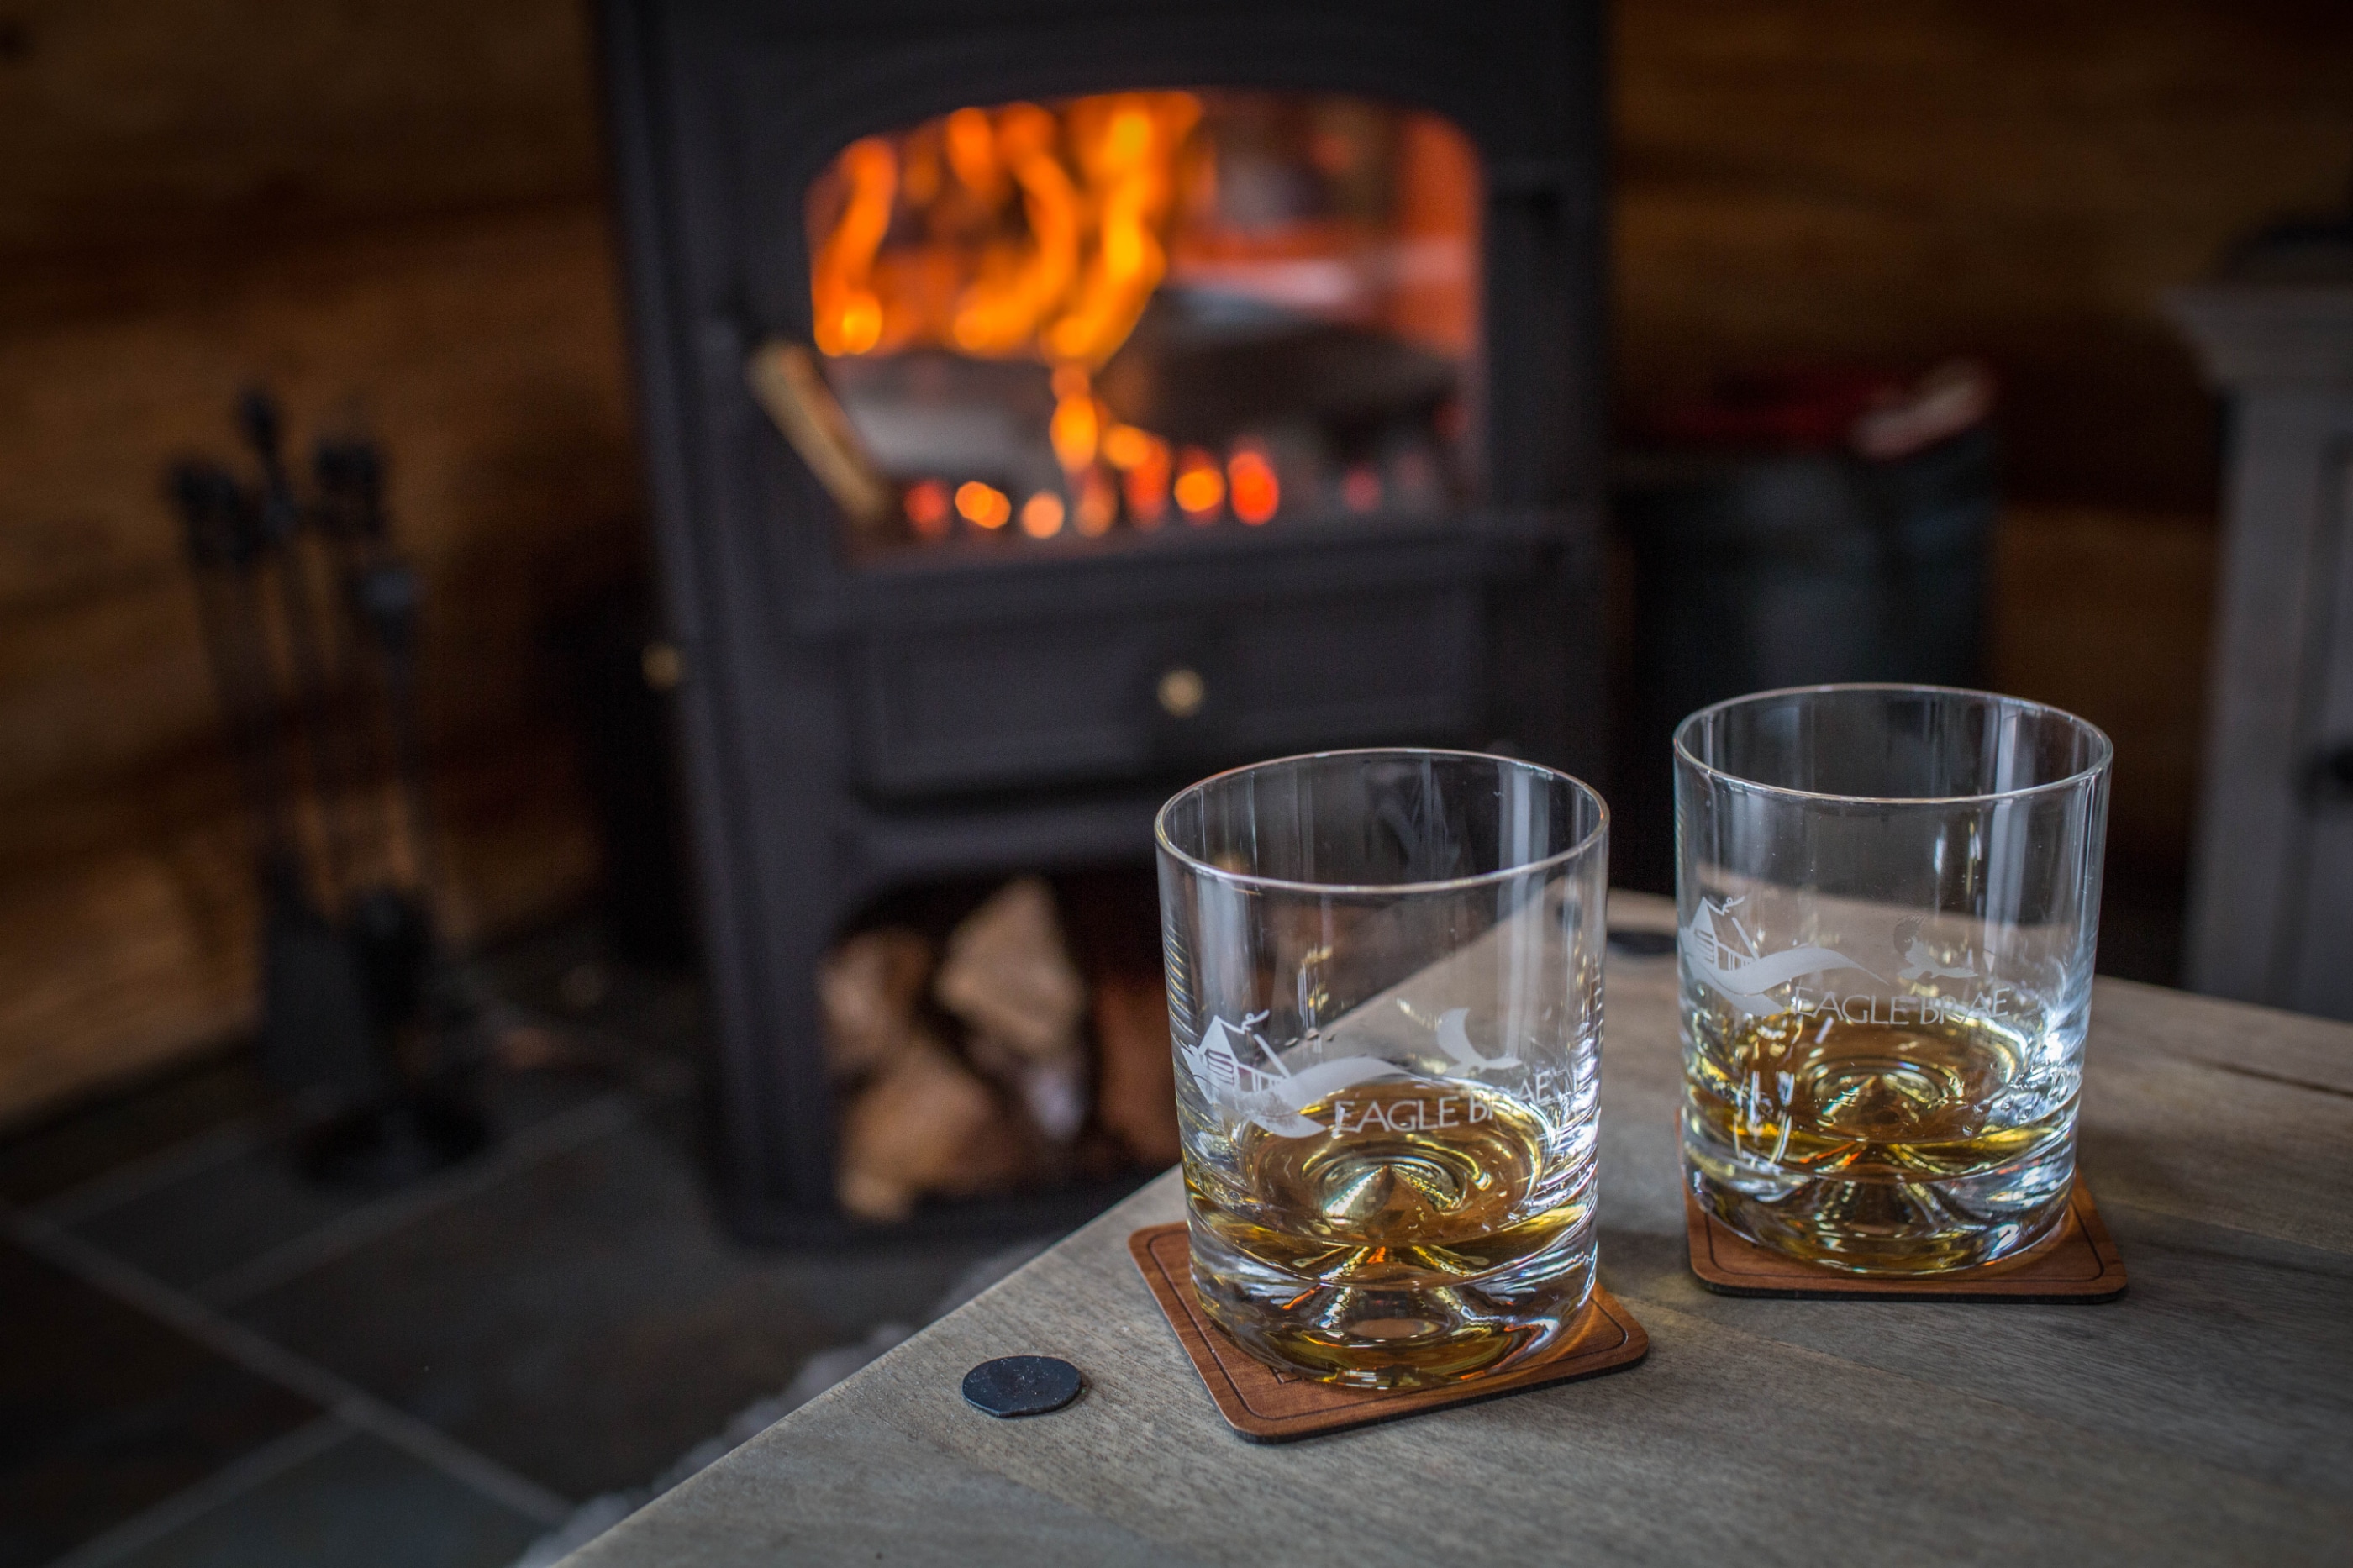 Whisky glassed in front of a log burner